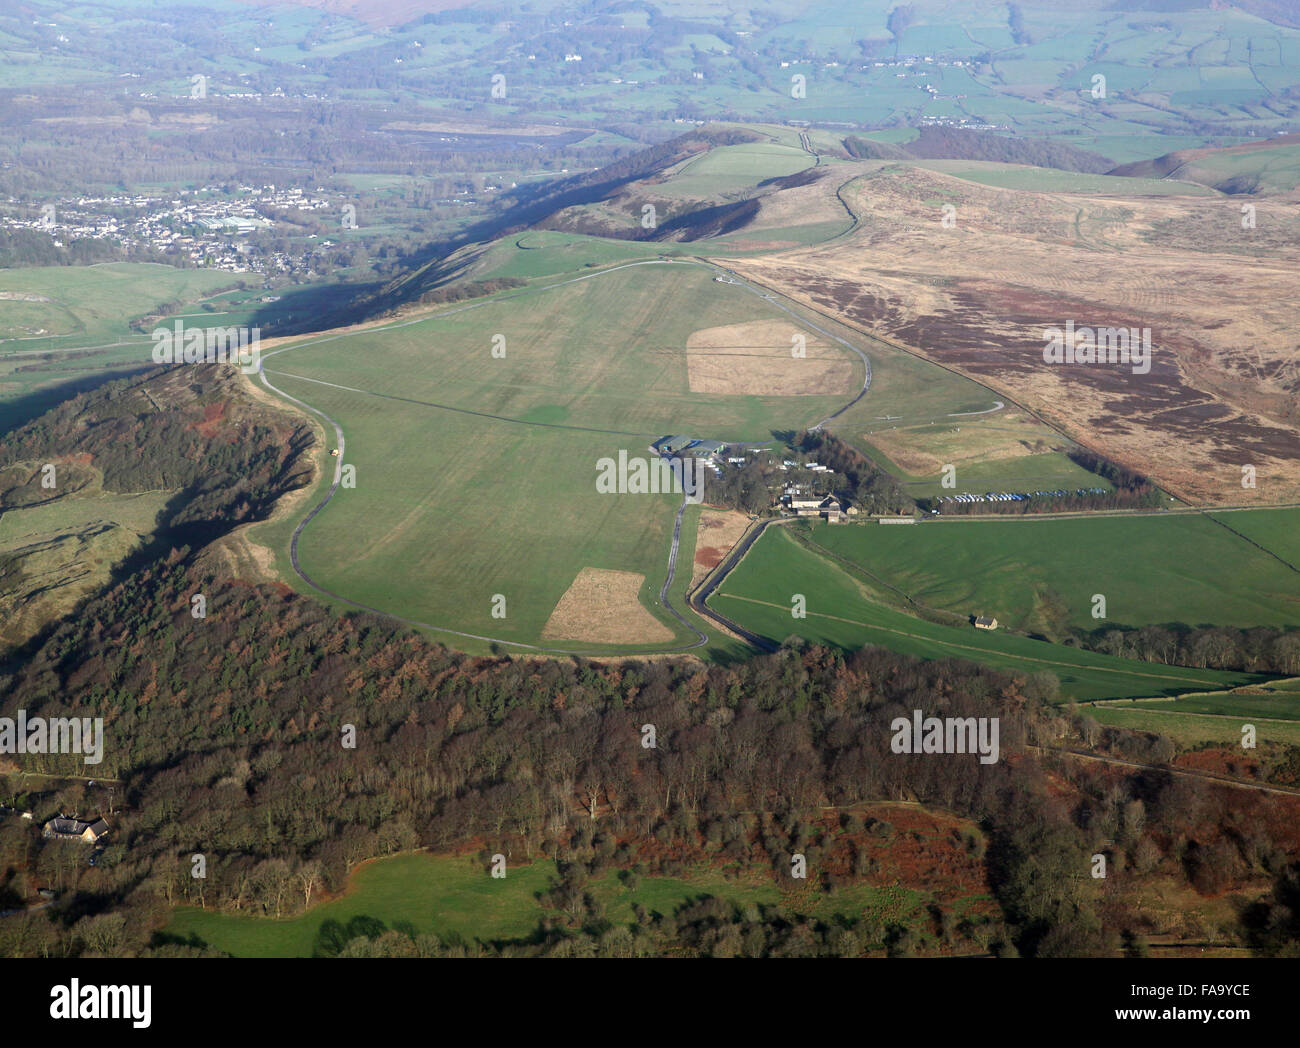 Vista aerea del Camphill deltaplano sito vicino a Buxton, Derbyshire, Regno Unito Foto Stock